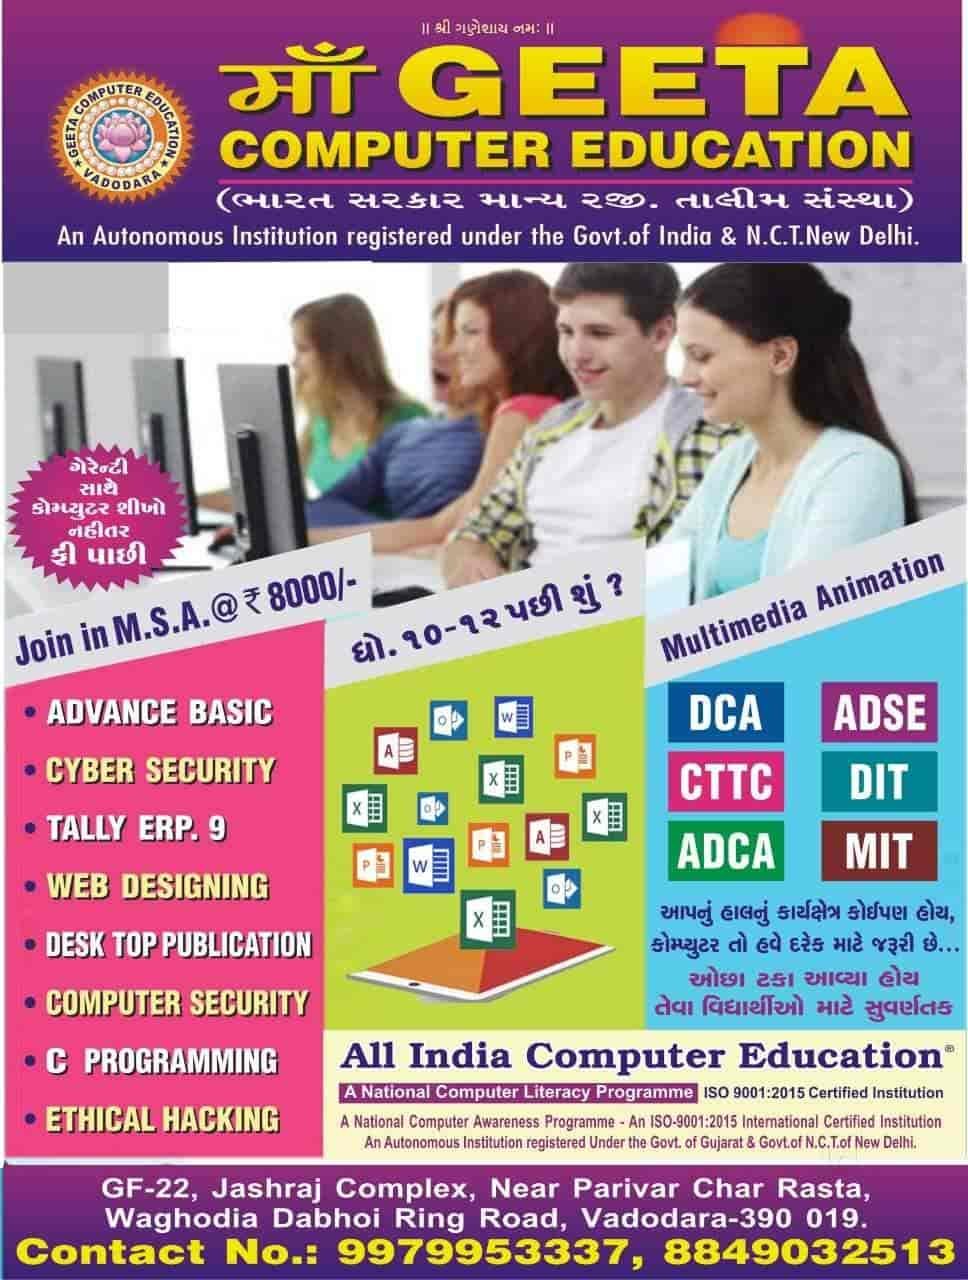 Maa Geeta Computer Education